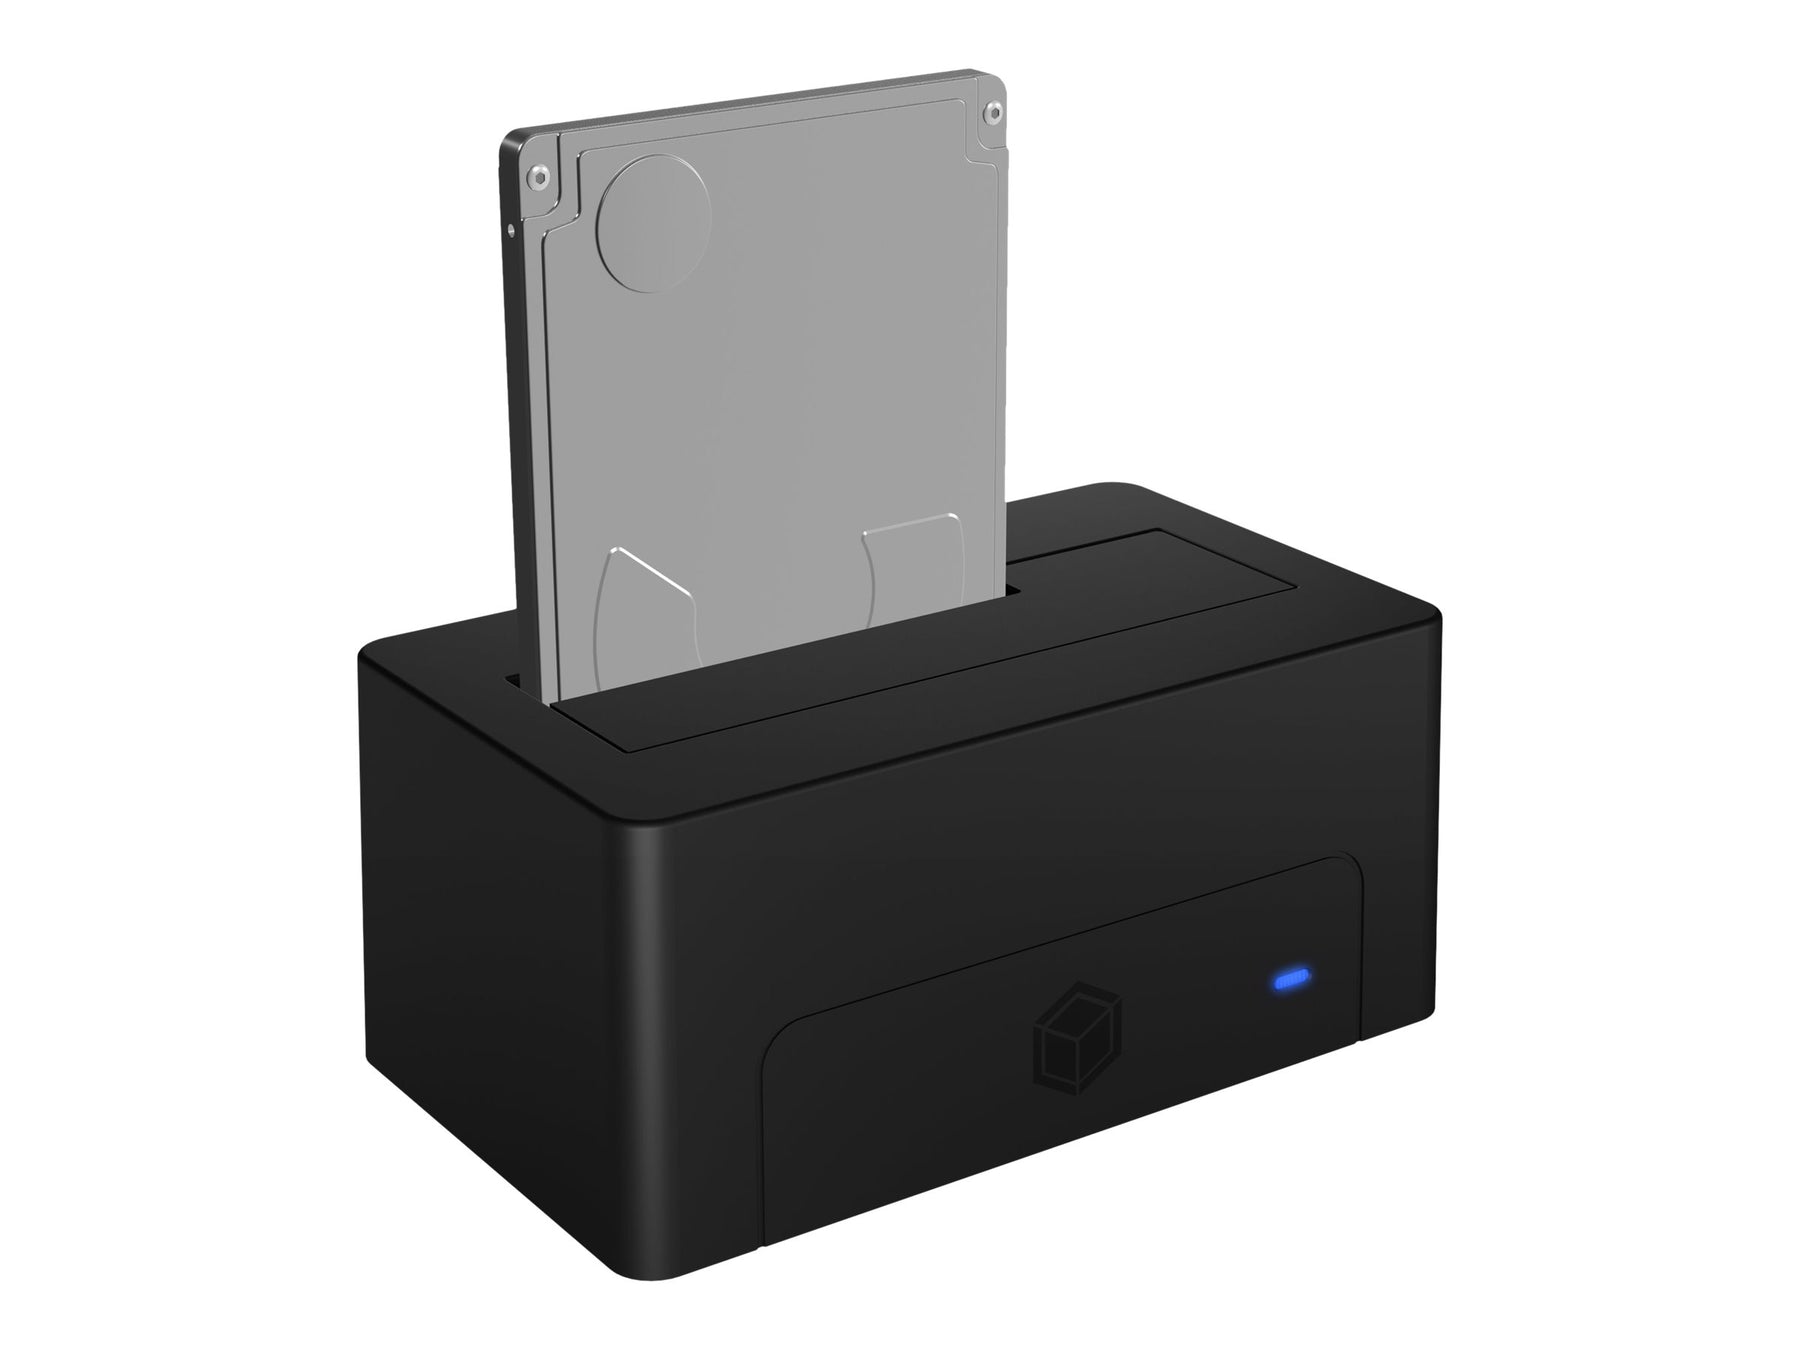 ICY BOX IB-1121-U3 - HDD-Dockingstation mit Datenanzeige, Netzanzeige, Ein/Aus-Schalter Schächte: 1 - 2,5" / 3,5" gemeinsam genutzt (6,4 cm/8,9 cm gemeinsam genutzt)